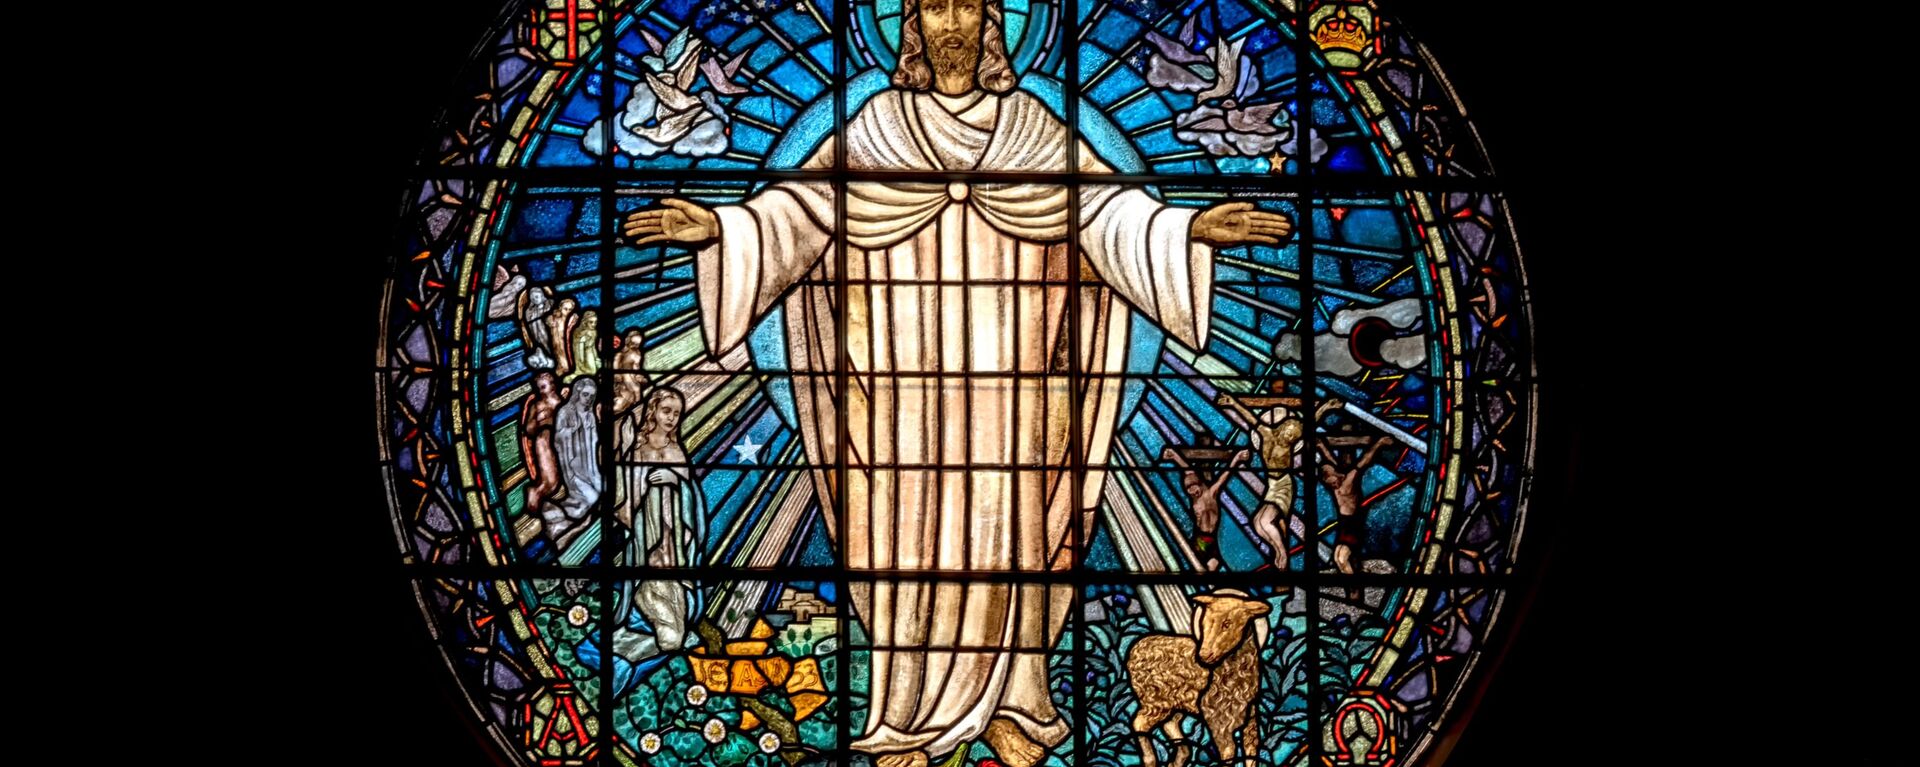 La representación de Jesús en un vitral de una iglesia - Sputnik Mundo, 1920, 23.03.2021